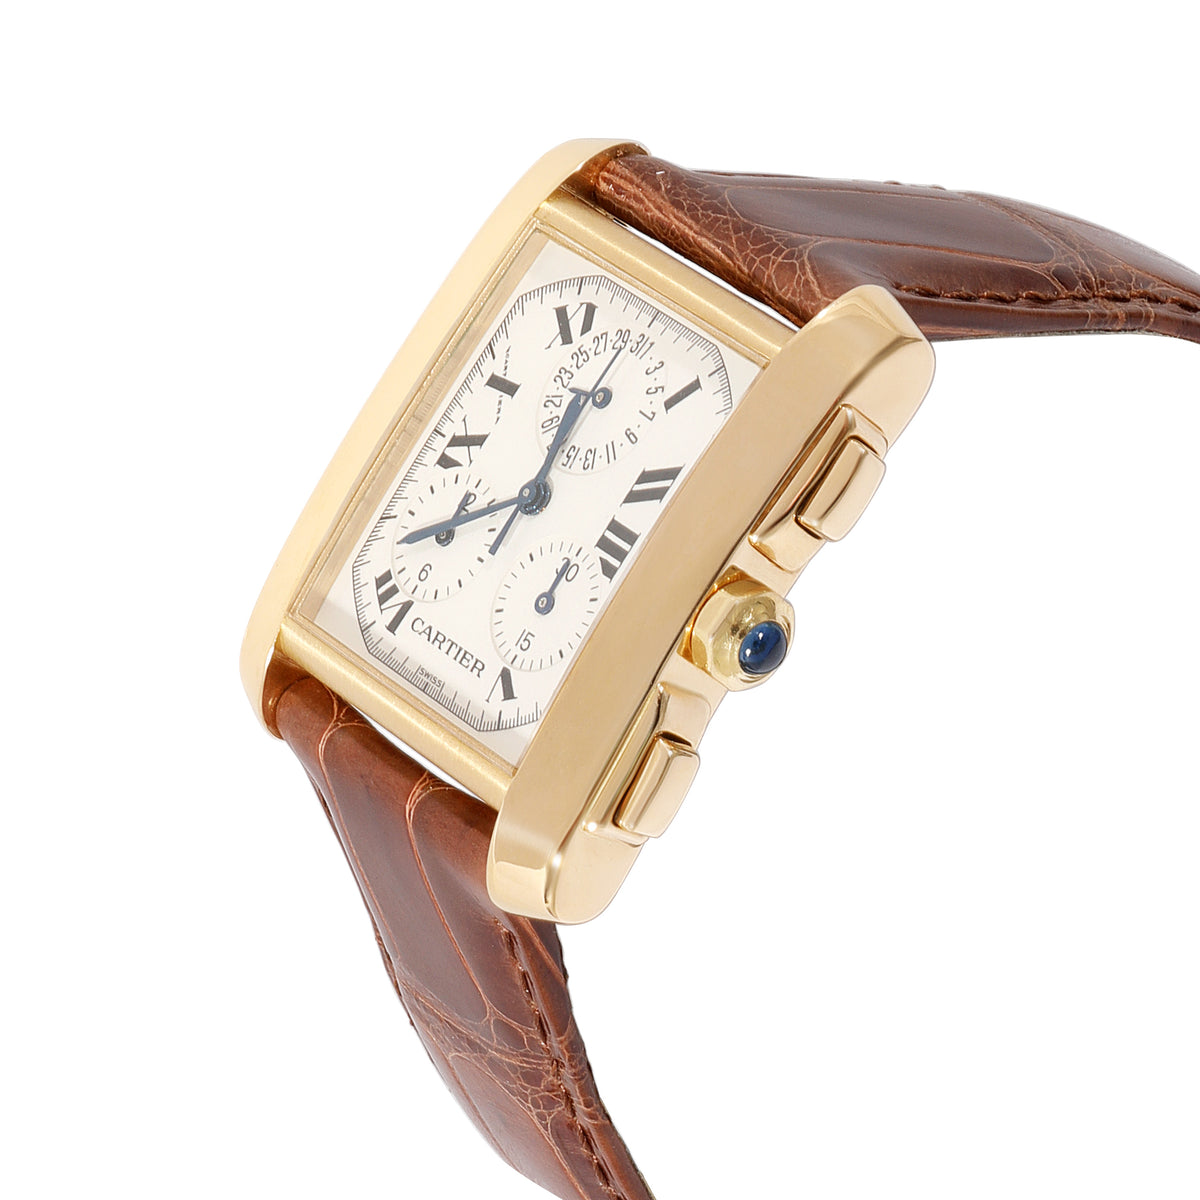 Cartier Tank Francaise Chronoflex W500556 Men's Watch in 18kt Yellow Gold